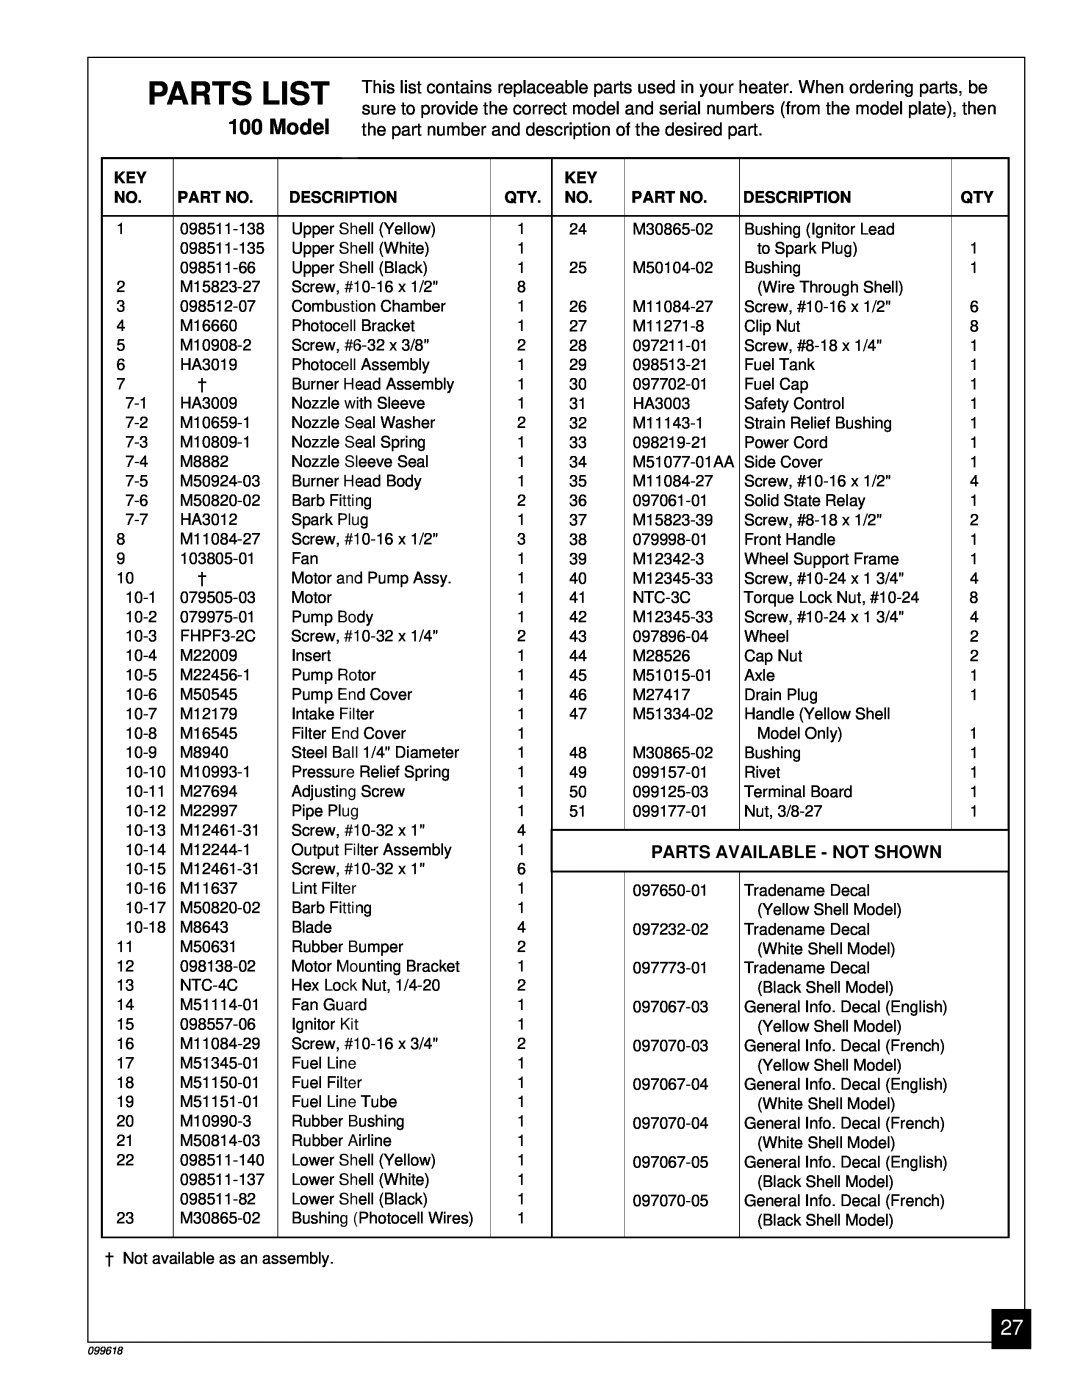 Desa 50 owner manual Parts List, Parts Available - Not Shown, Description 